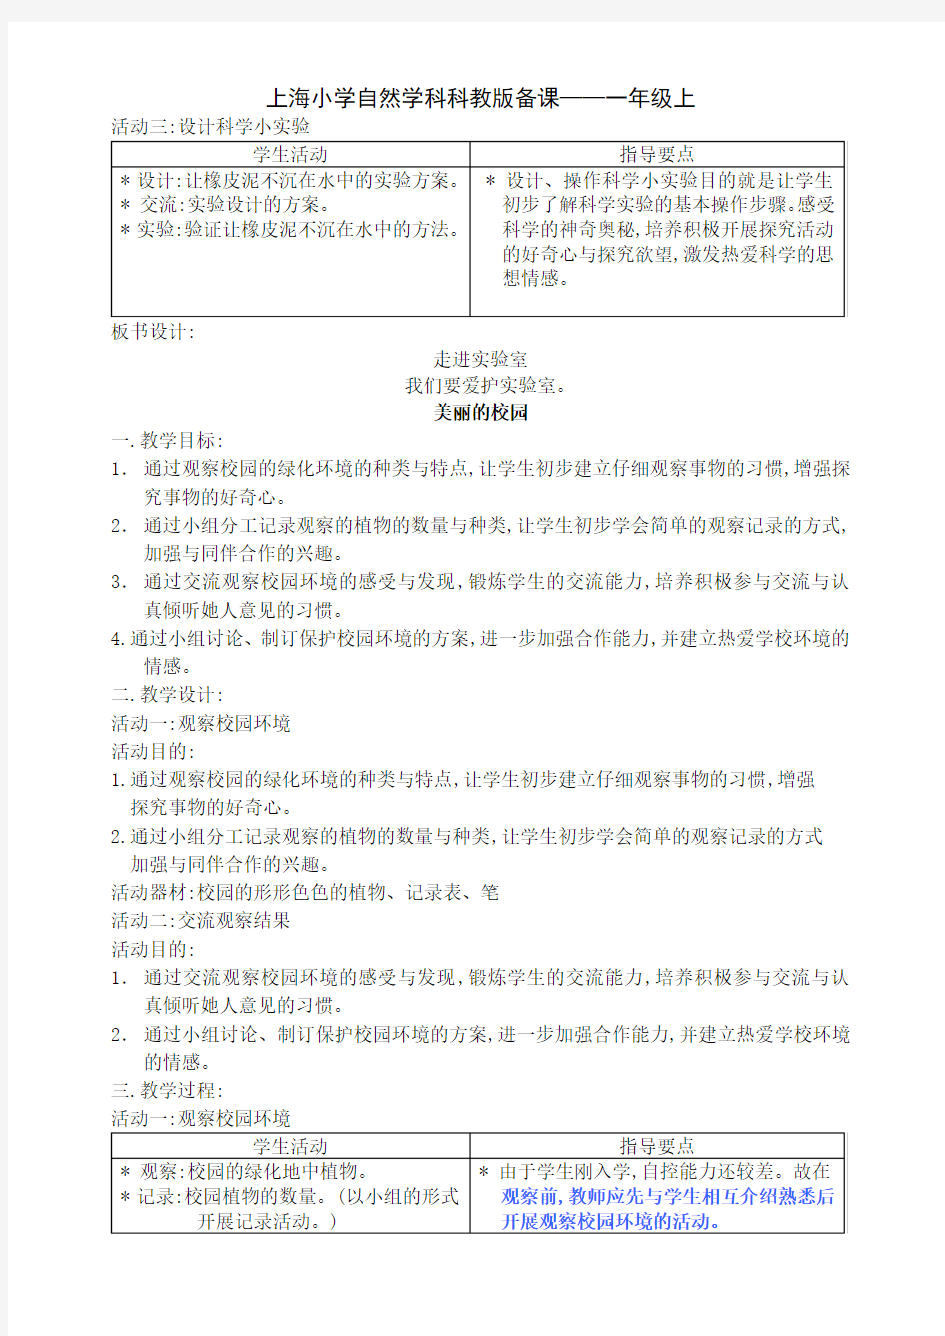 上海小学自然学科科教版备课——一年级上